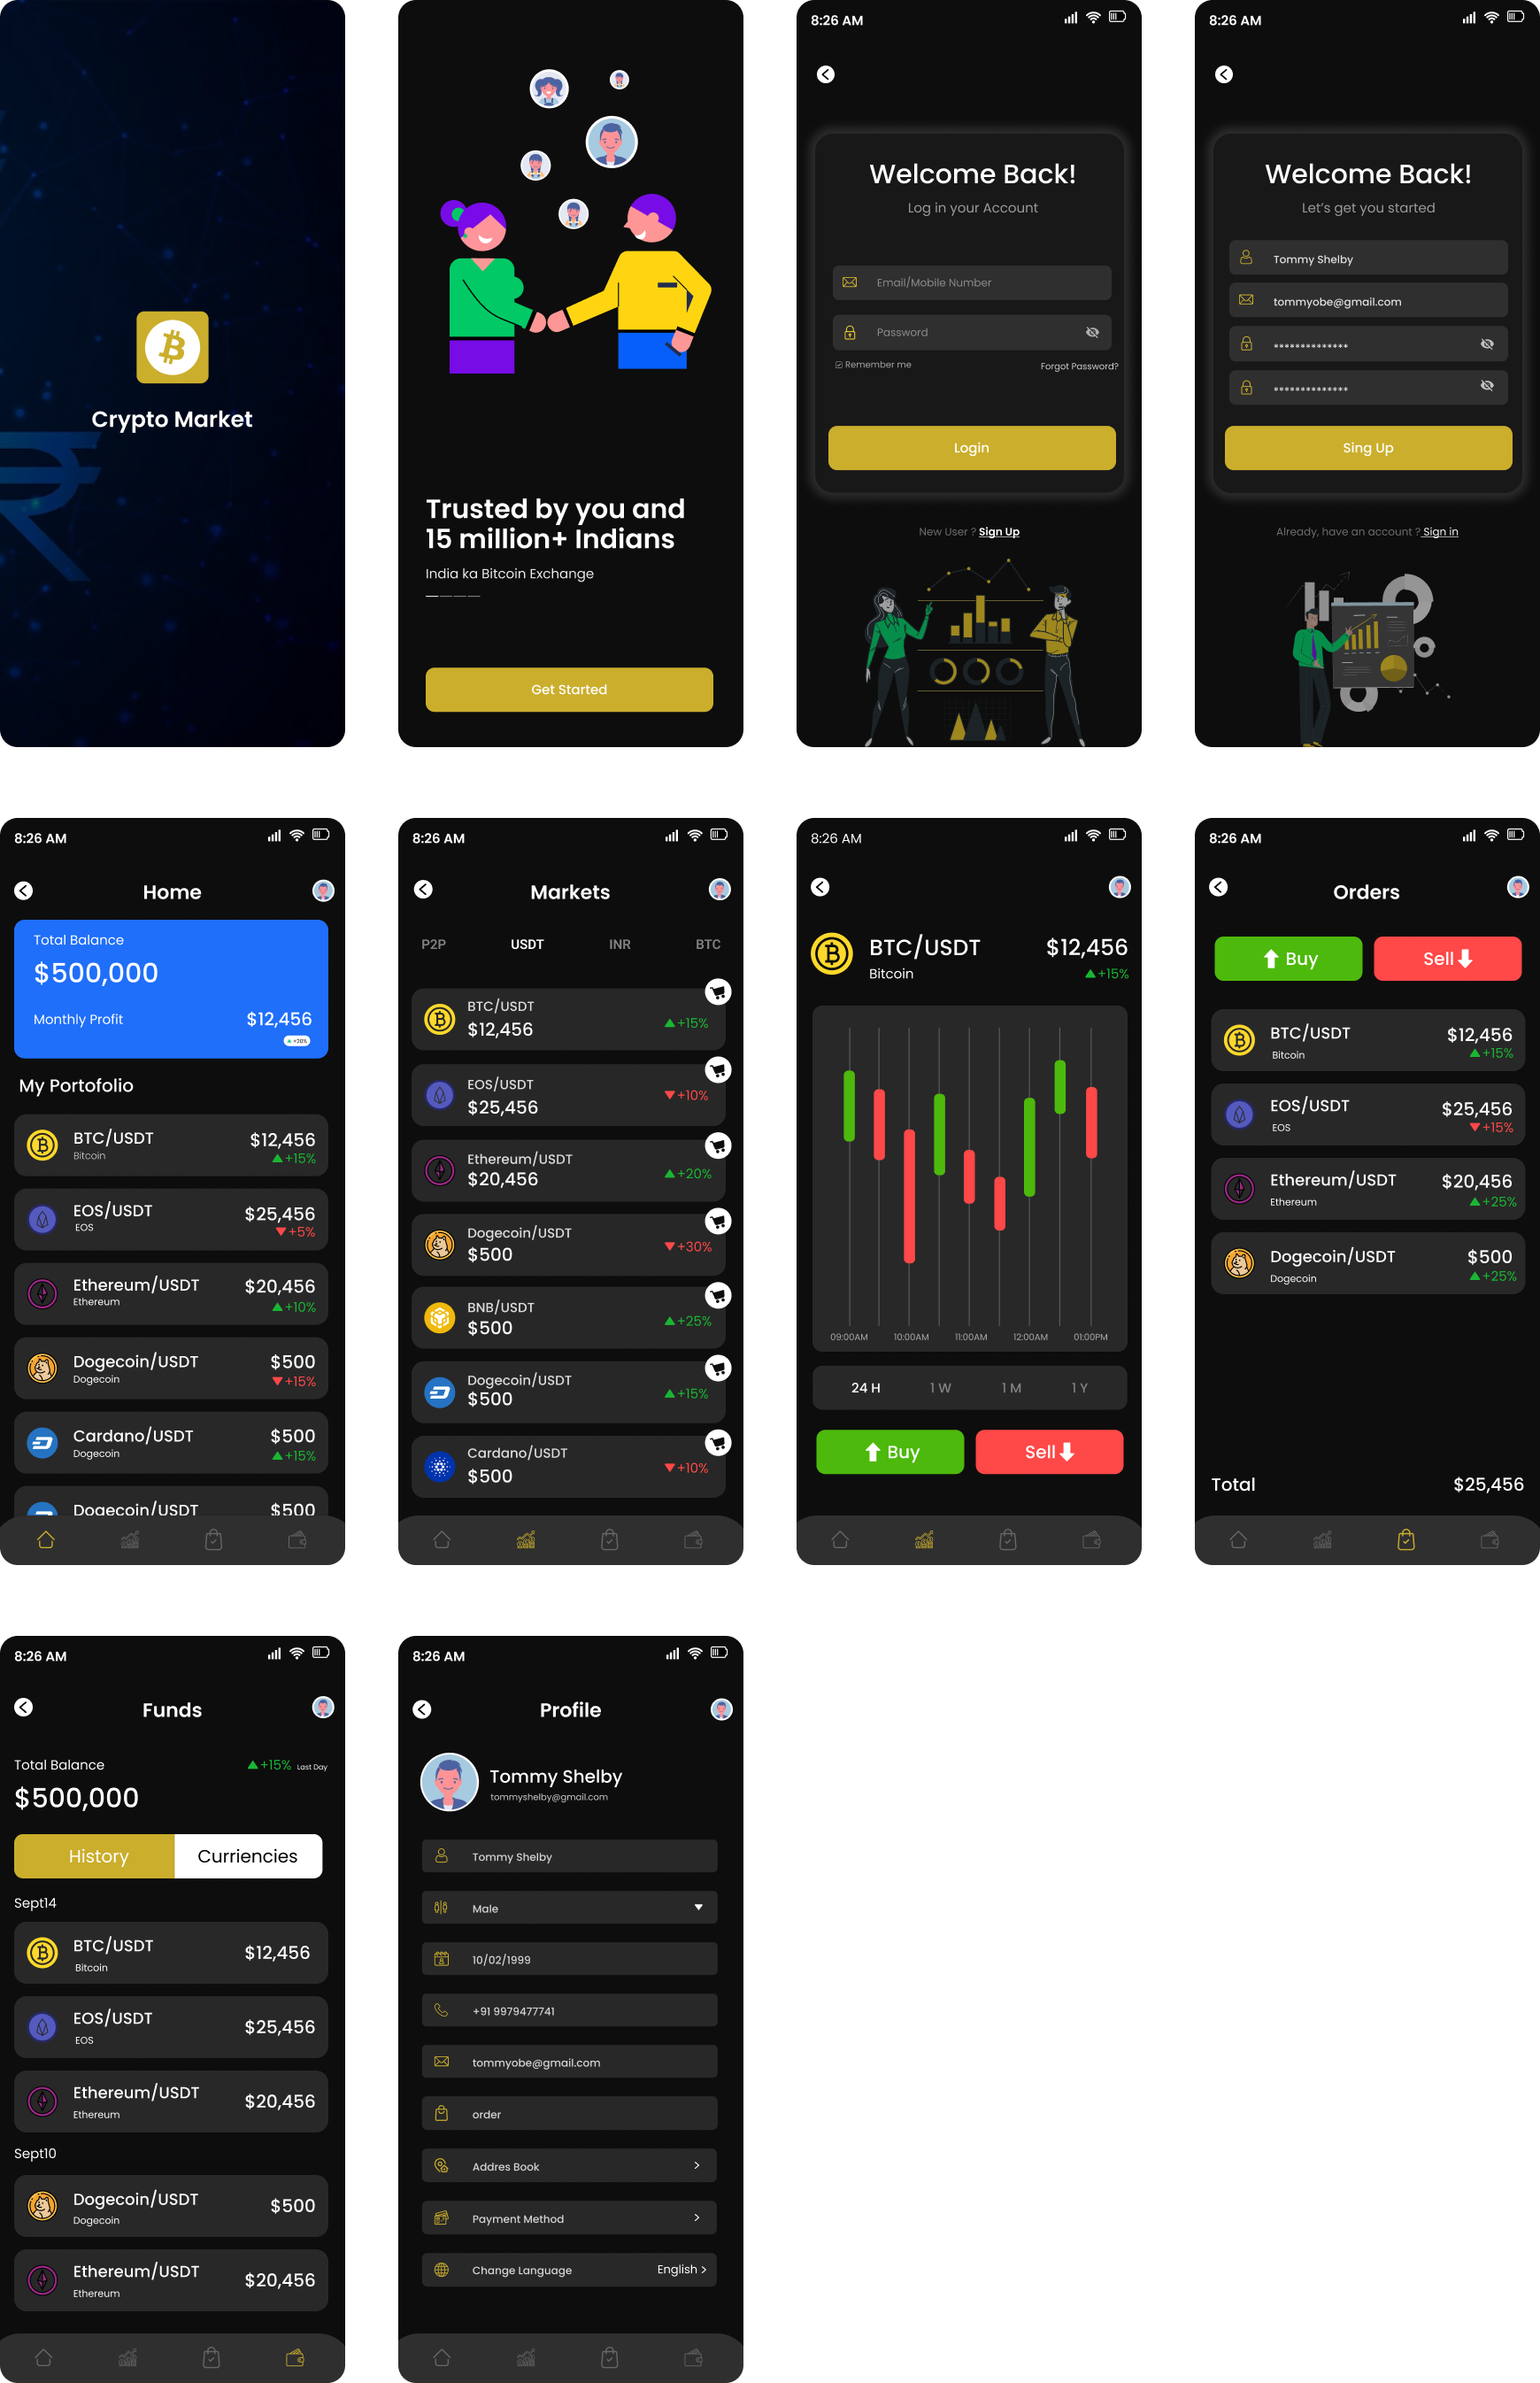 加密货币交易平台app ui: 专业的加密货币交易平台app界面设计素材下载 figma格式-UI/UX-到位啦UI